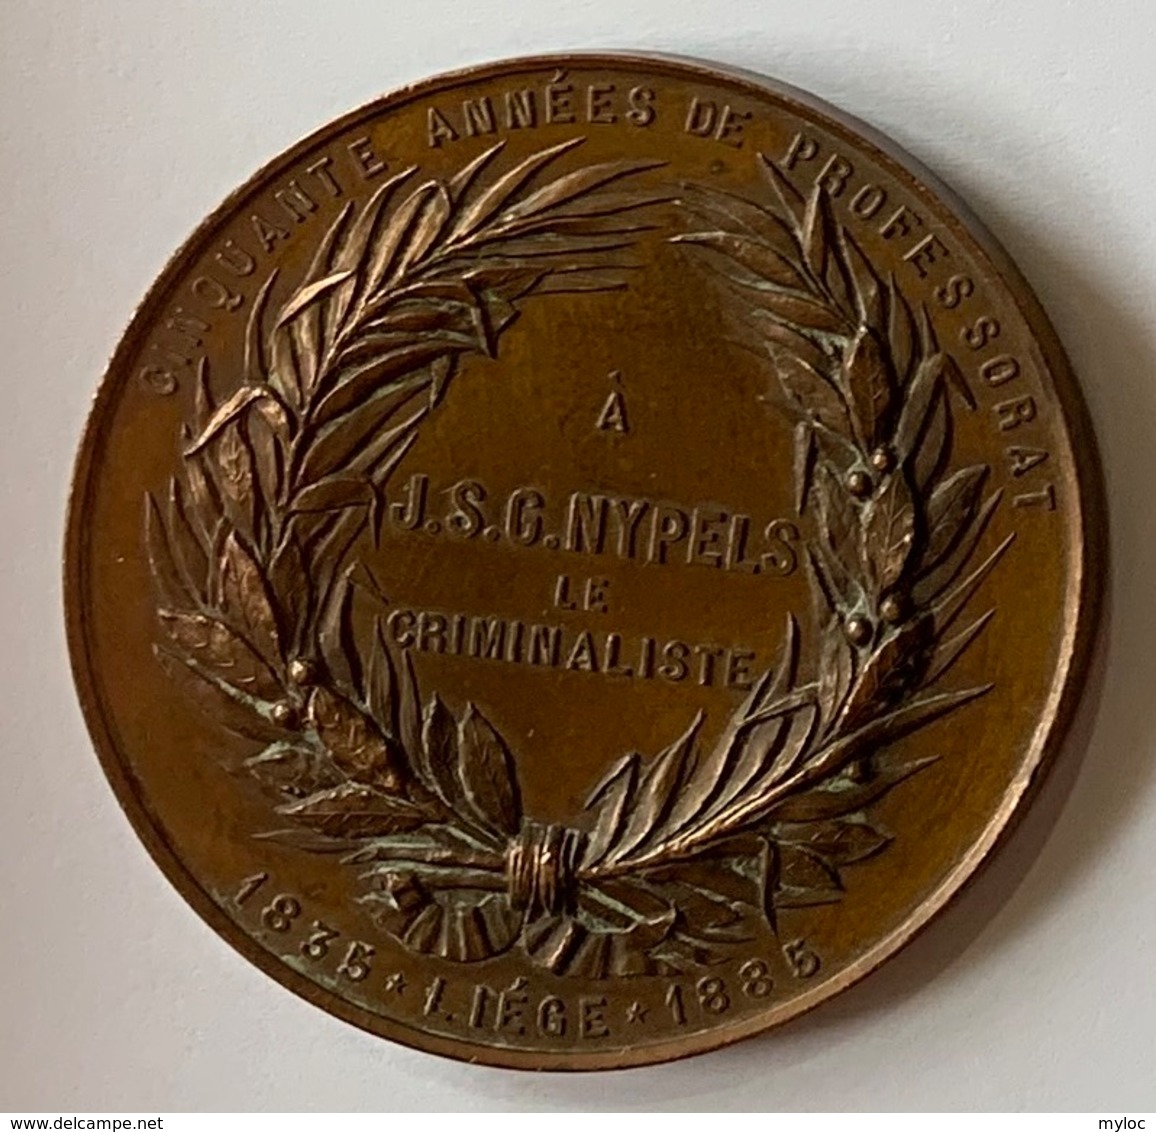 Médaille Bronze. Professeur J.S.G. Nypels. Criminalliste. Cinquante Années De Professorat. Liège 1835-1885. E. Geerts. - Professionali / Di Società